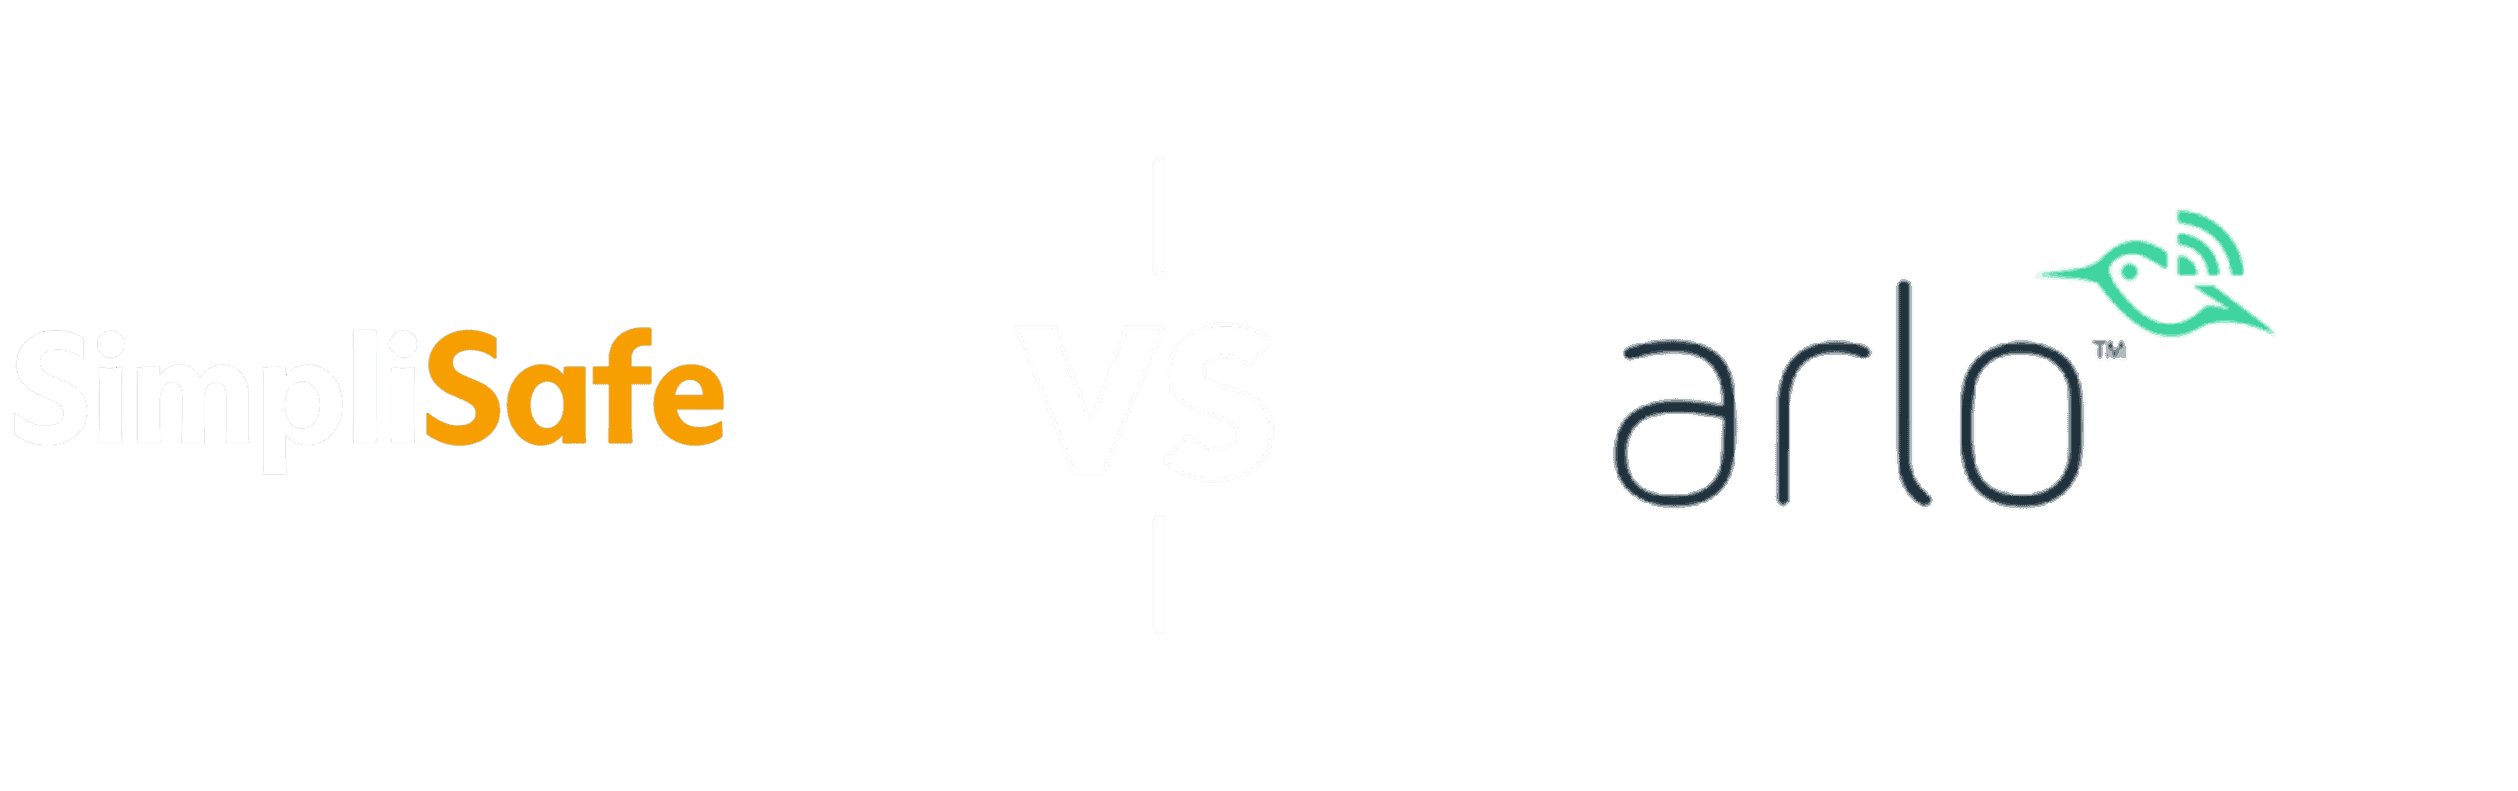 SimpliSafe vs Arlo Comparison